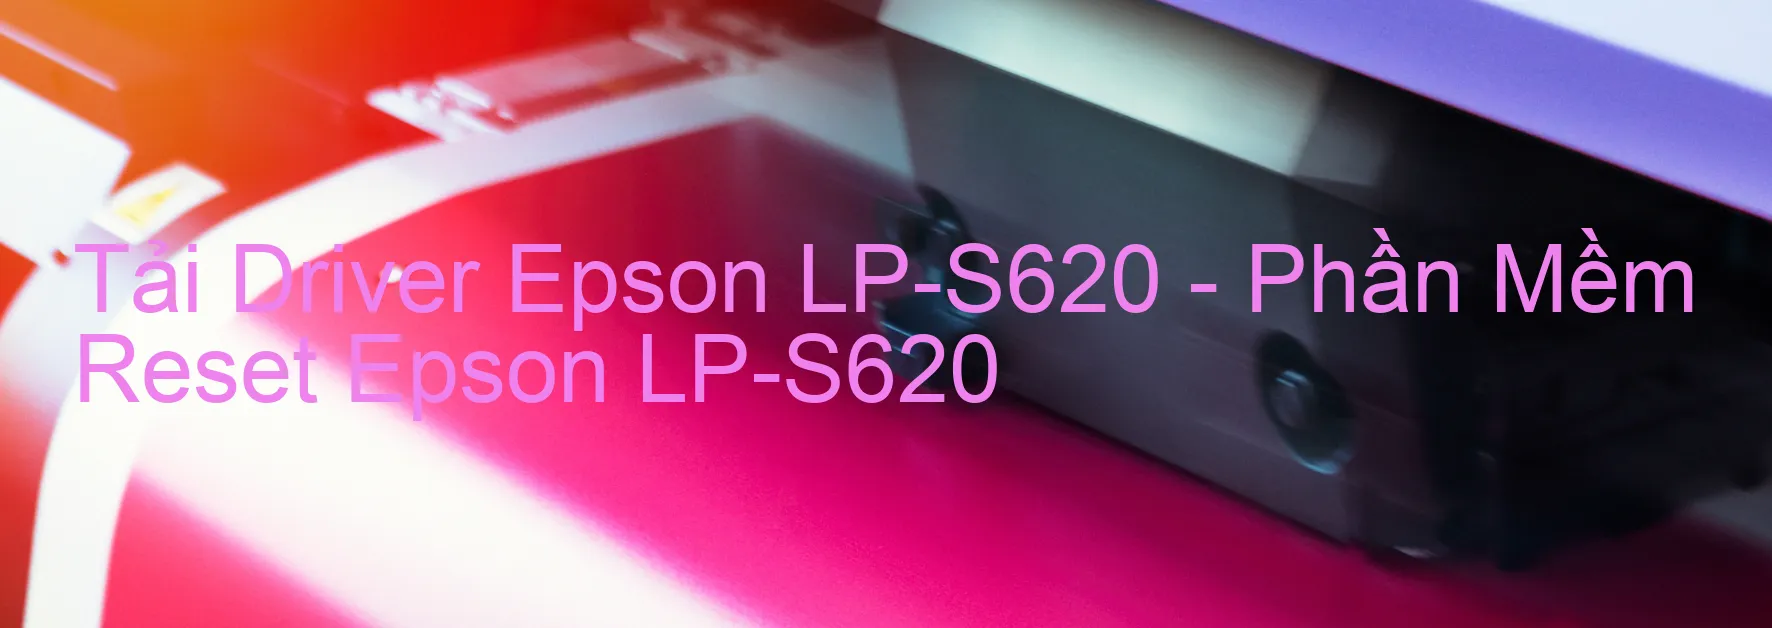 Driver Epson LP-S620, Phần Mềm Reset Epson LP-S620